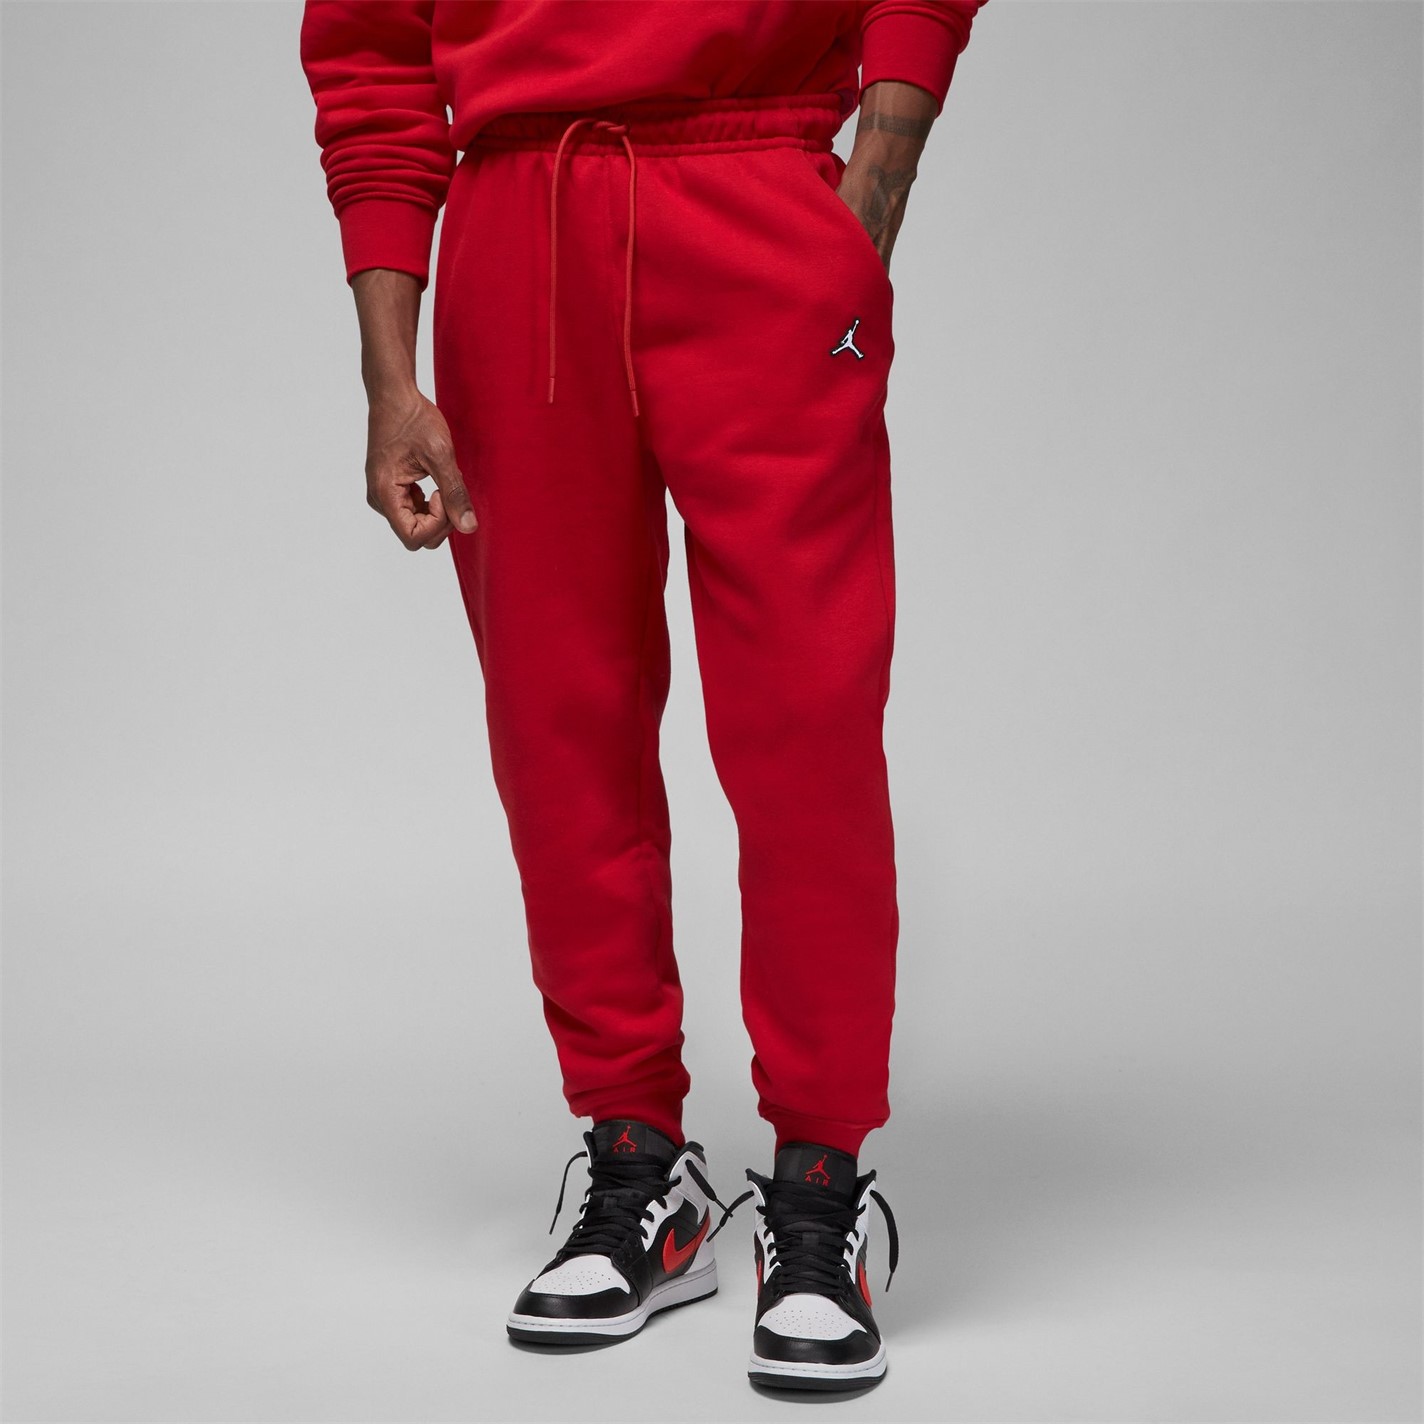 Pantaloni caldurosi Air Jordan Essential pentru Barbati gym rosu